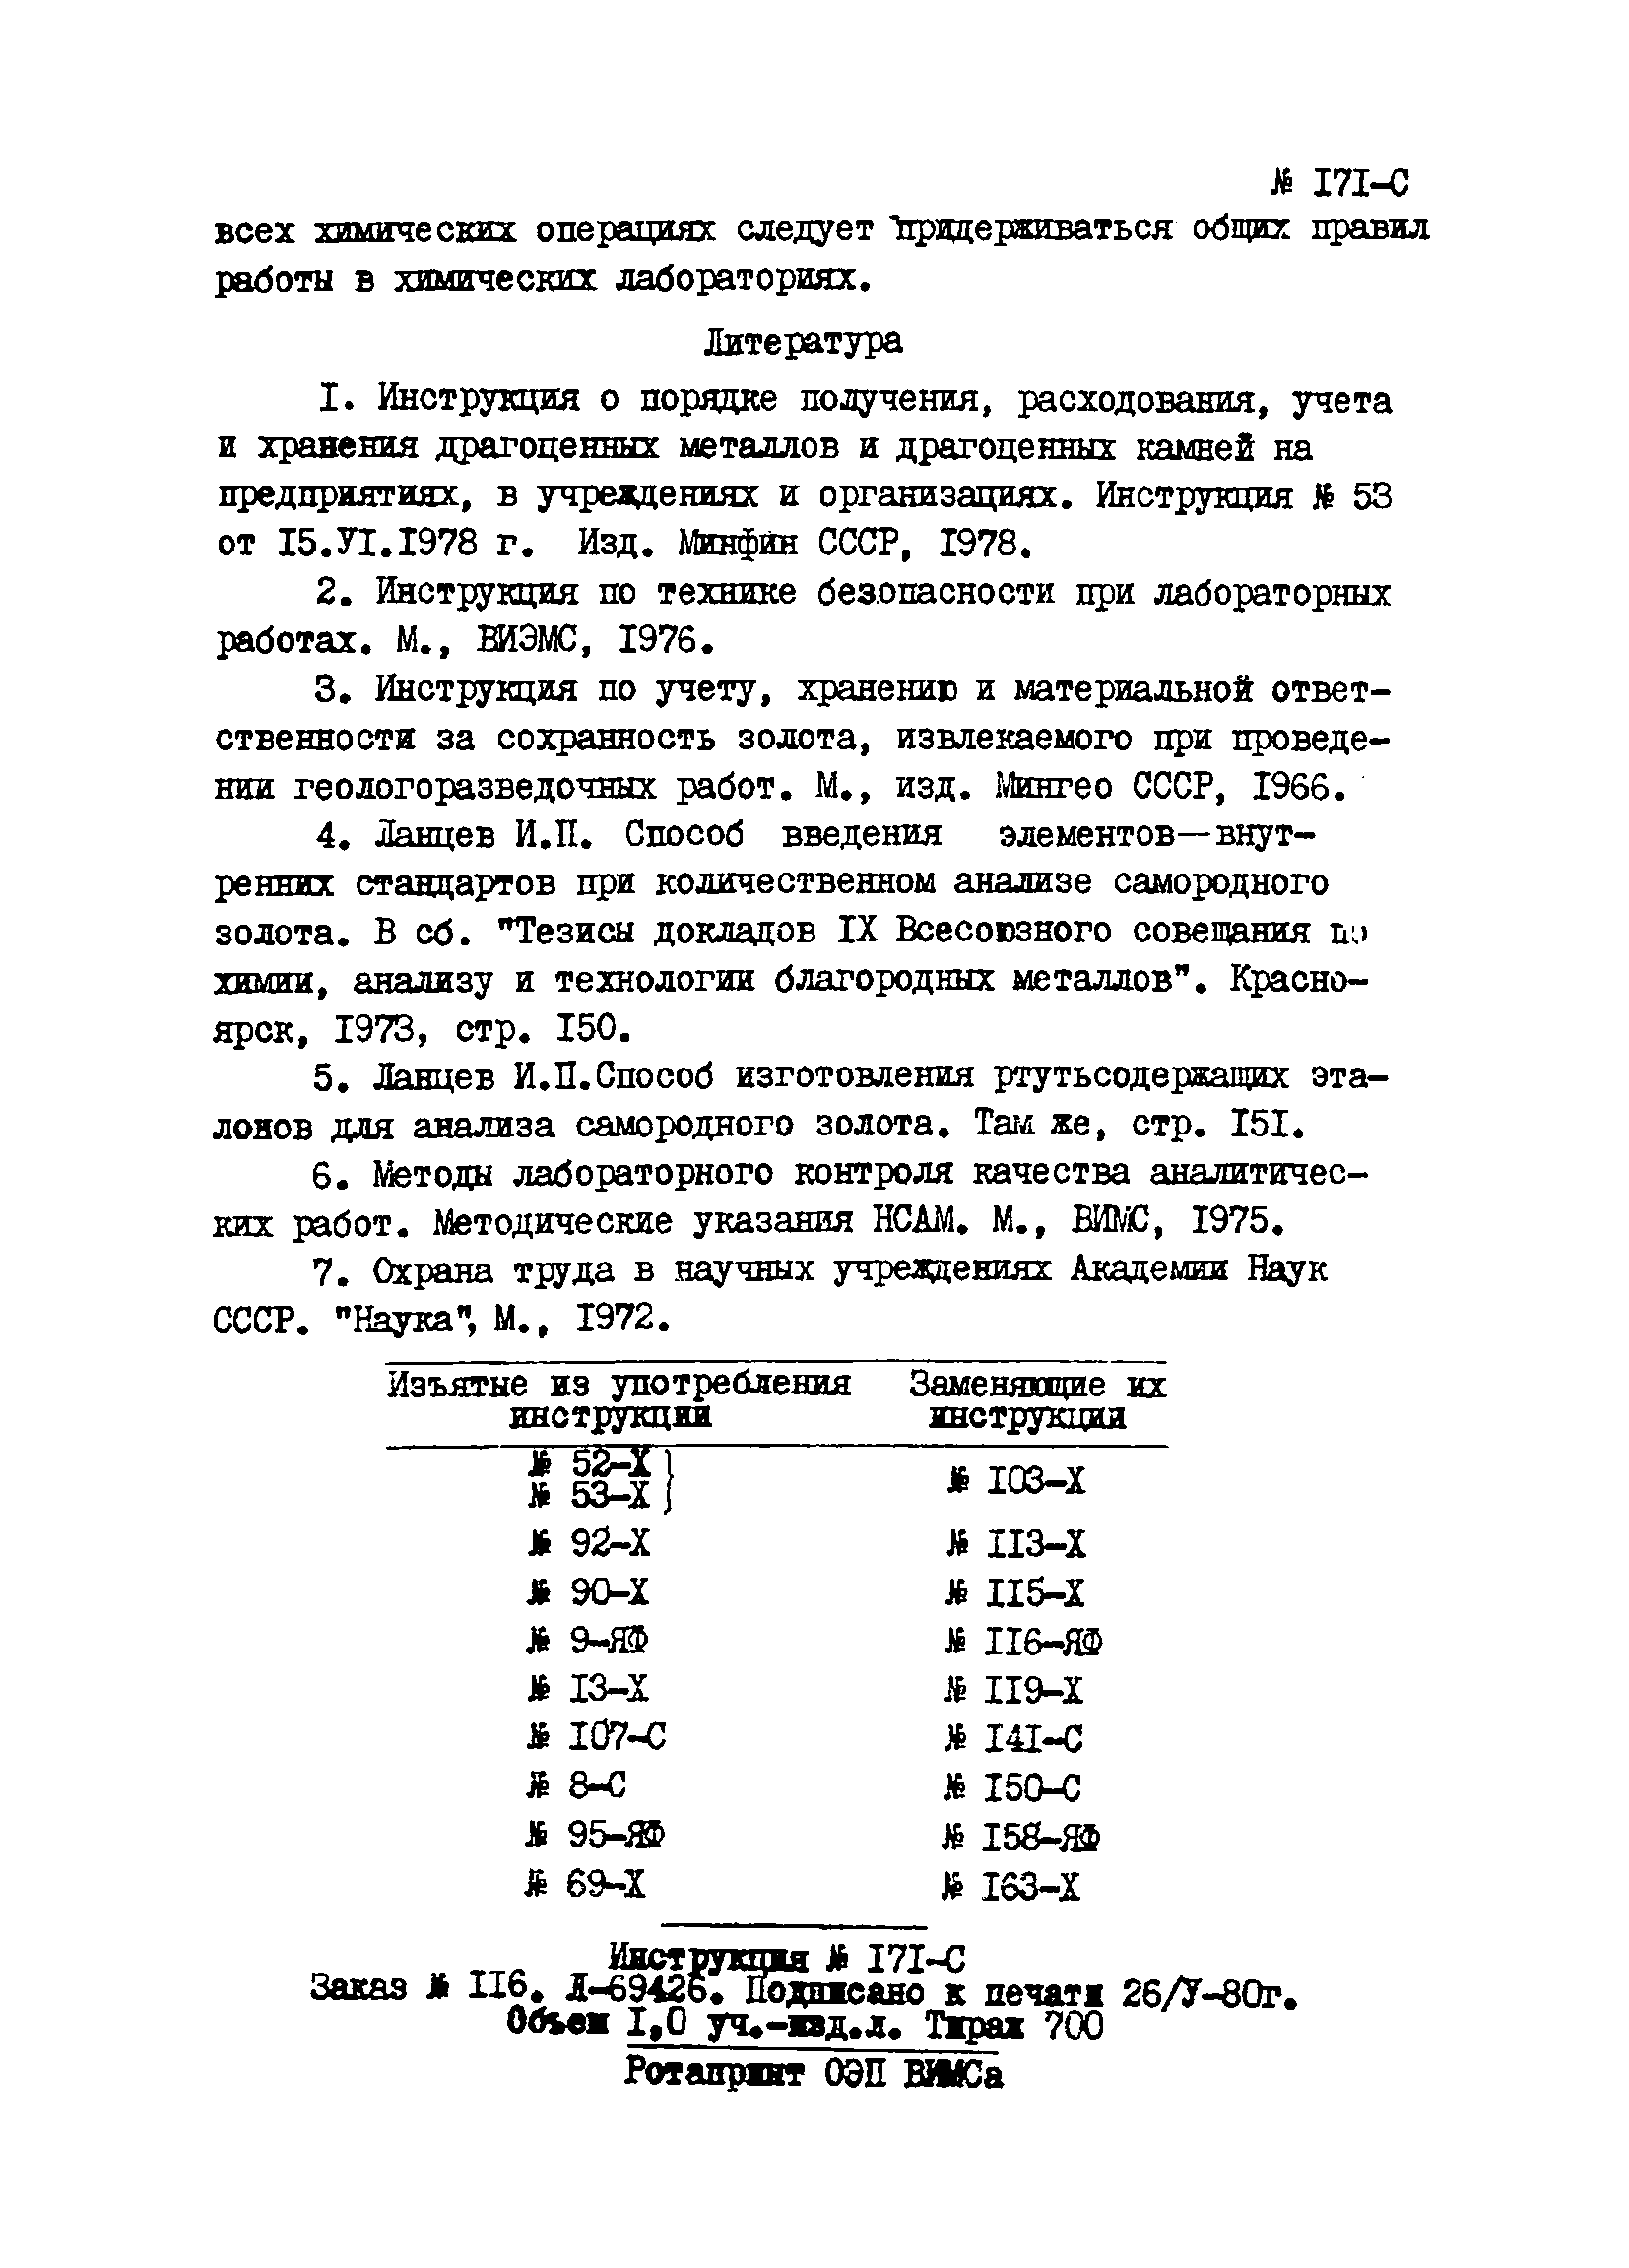 Инструкция НСАМ 171-С